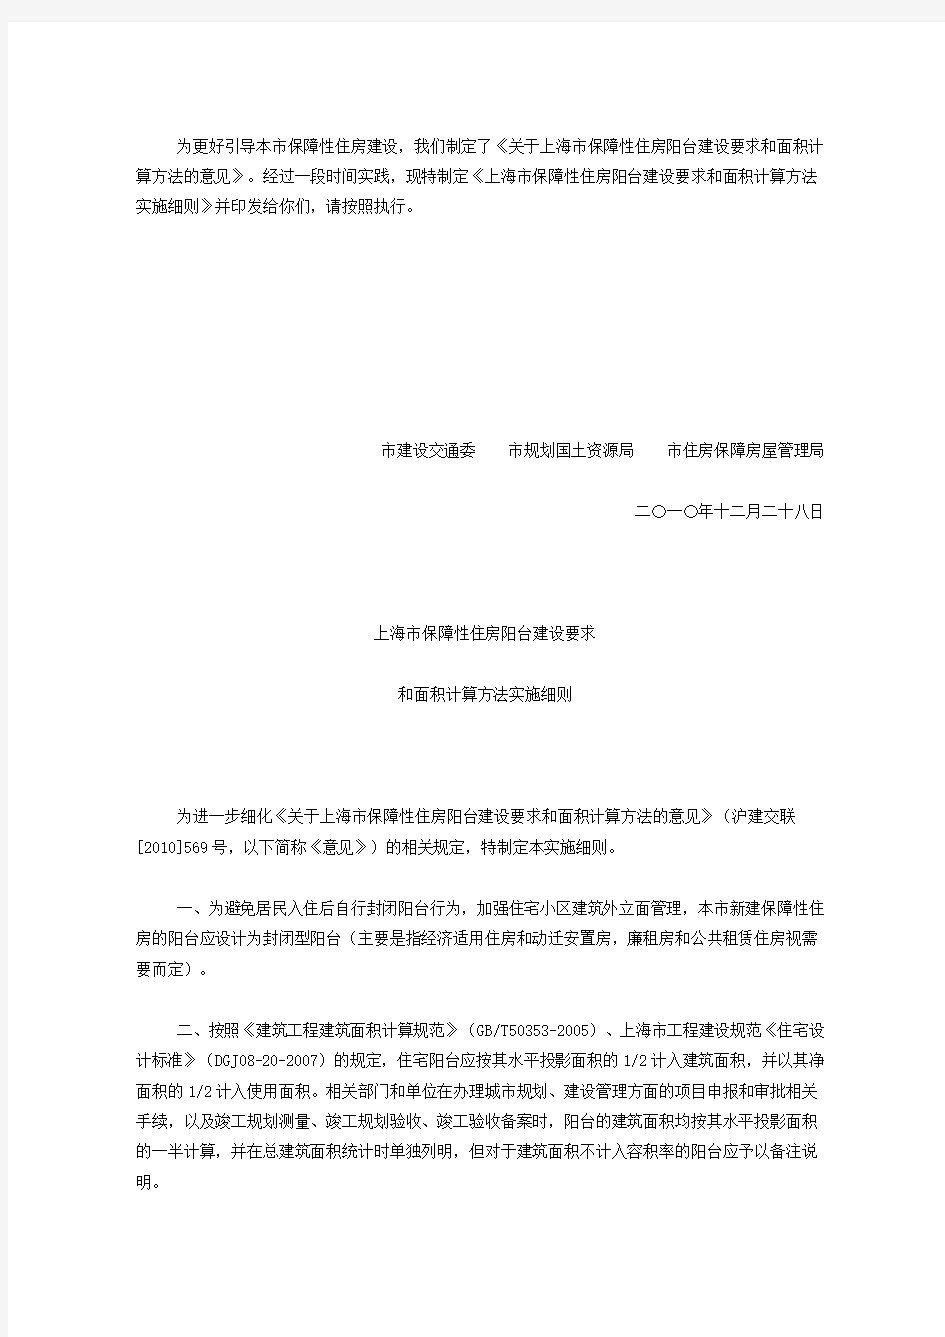 (完整版)《上海市保障性住房阳台建设要求和面积计算方法实施细则》的通知